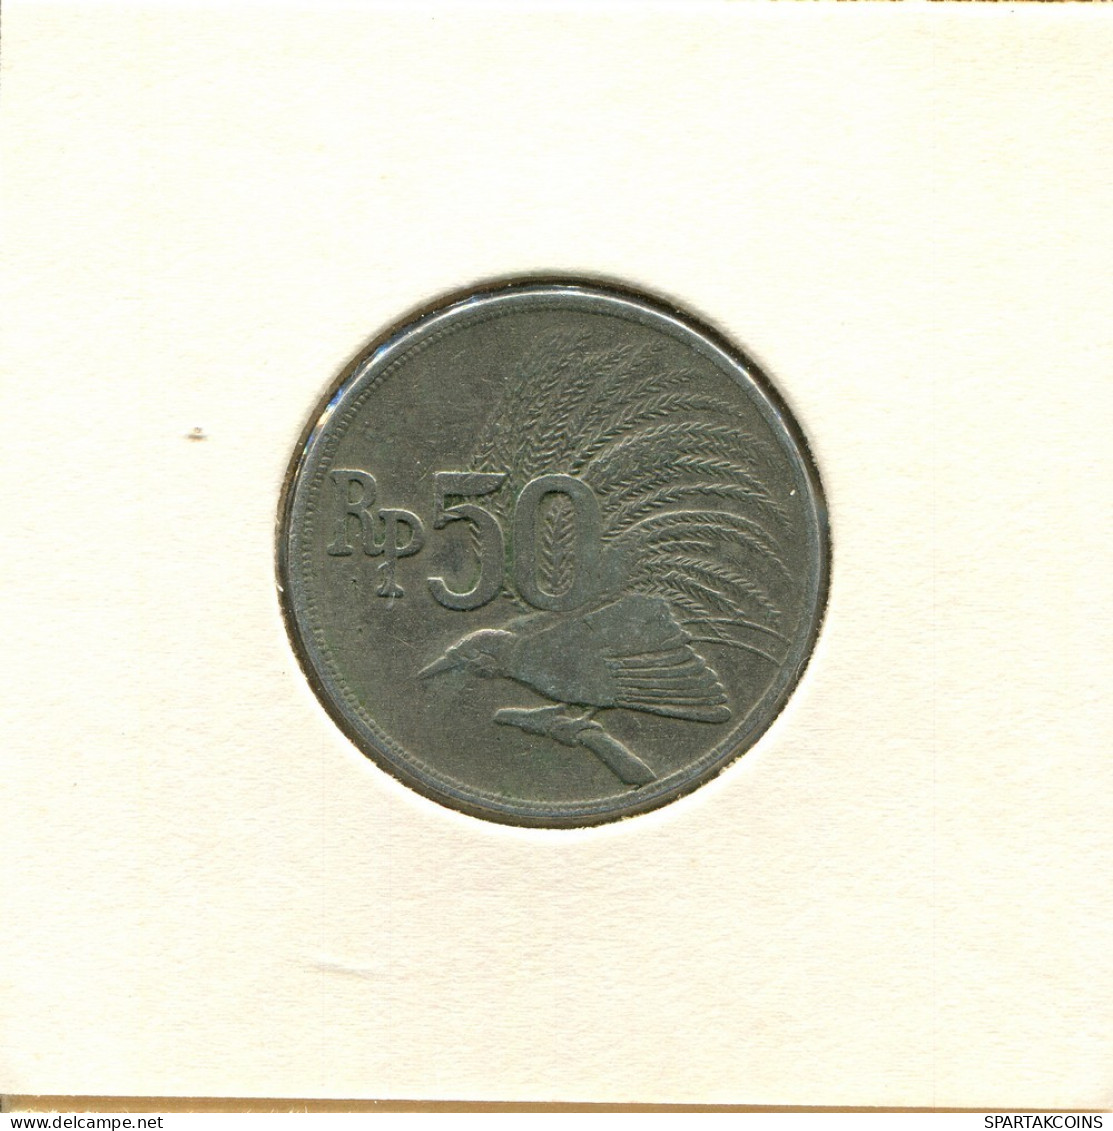 50 RUPIAH 1971 INDONESIA Coin #BA110.U.A - Indonesia